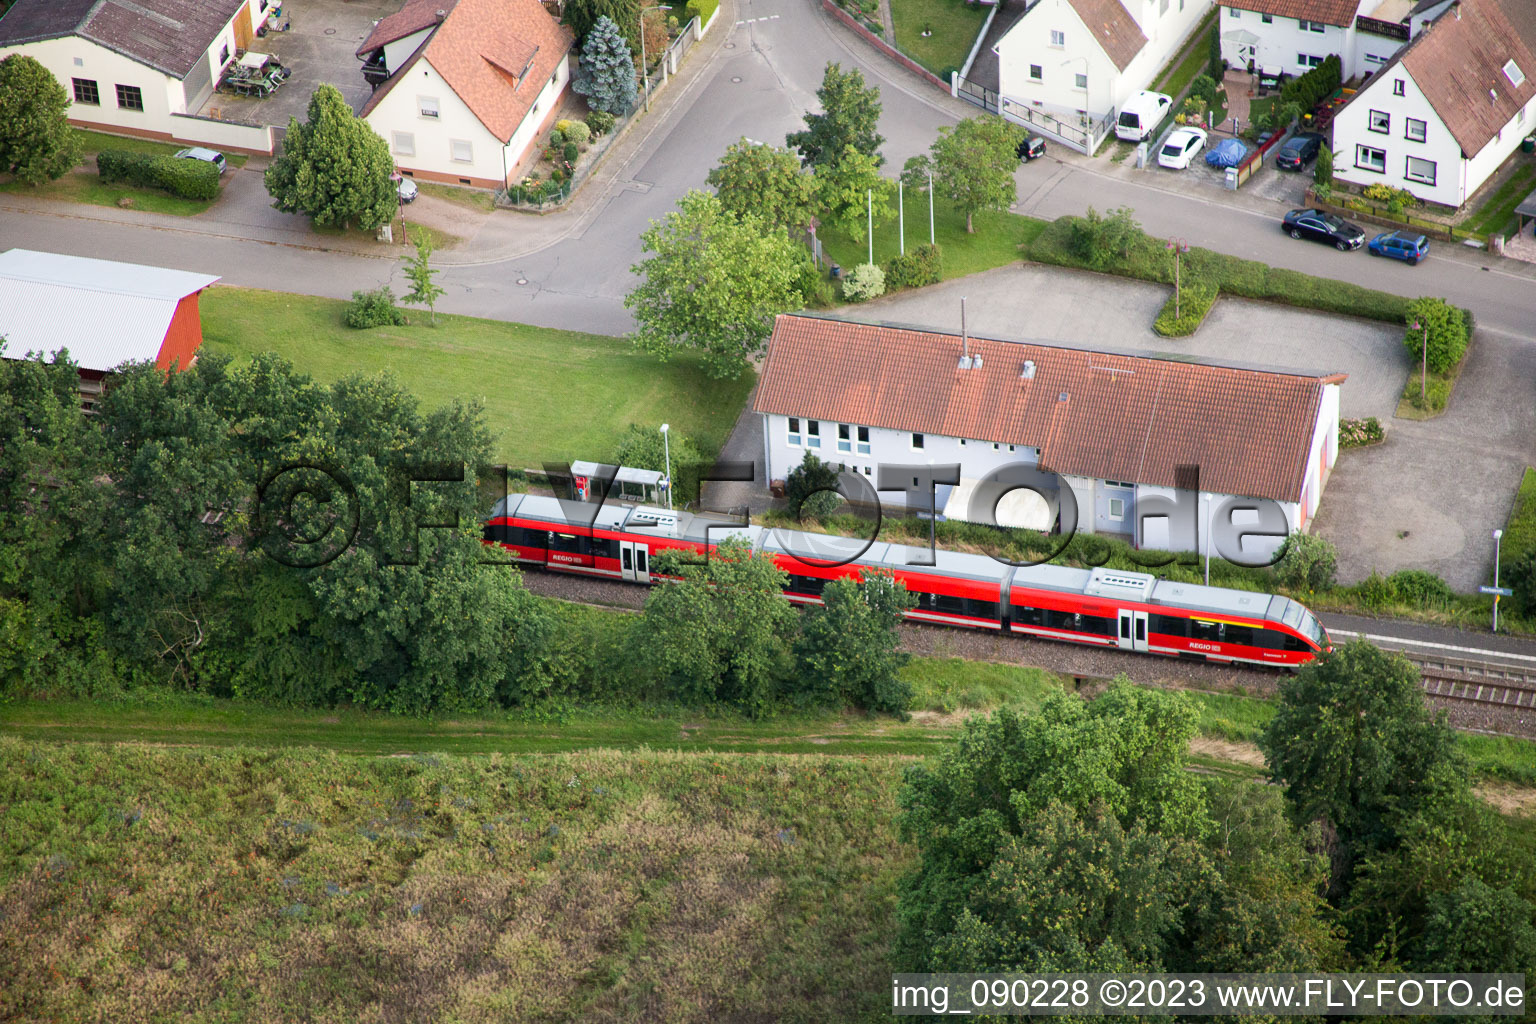 Barbelroth dans le département Rhénanie-Palatinat, Allemagne vu d'un drone